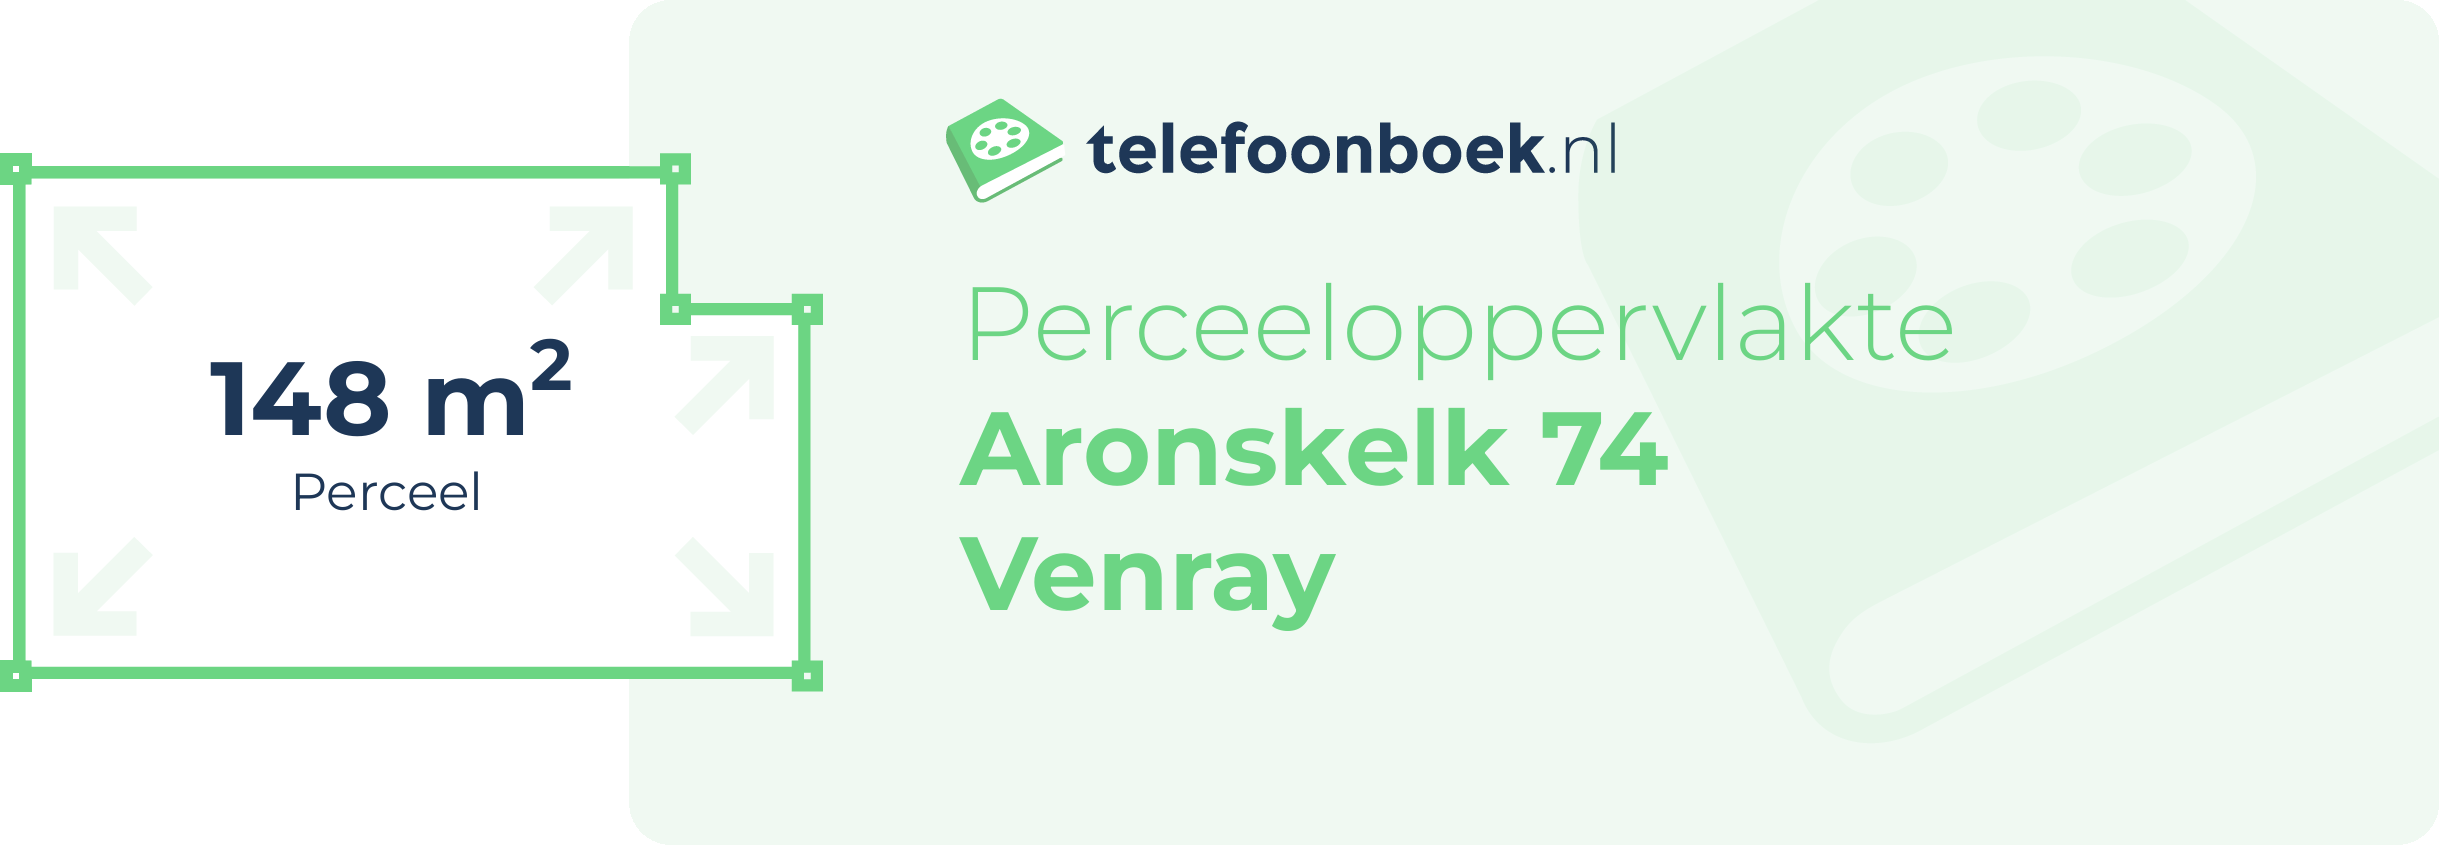 Perceeloppervlakte Aronskelk 74 Venray